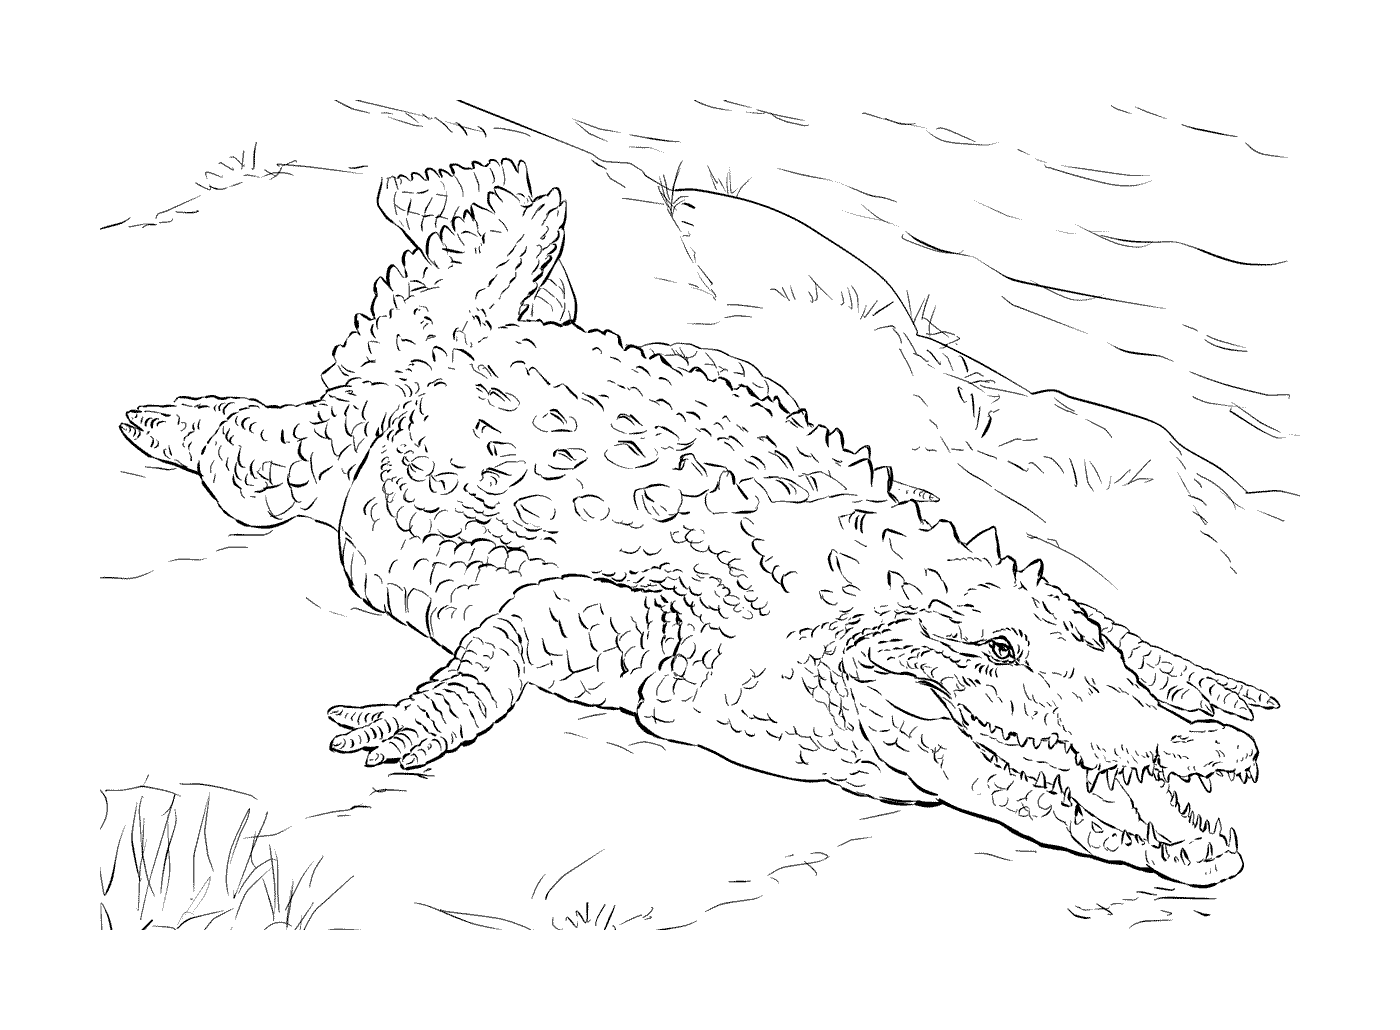  Un cocodrilo americano tirado en la hierba 